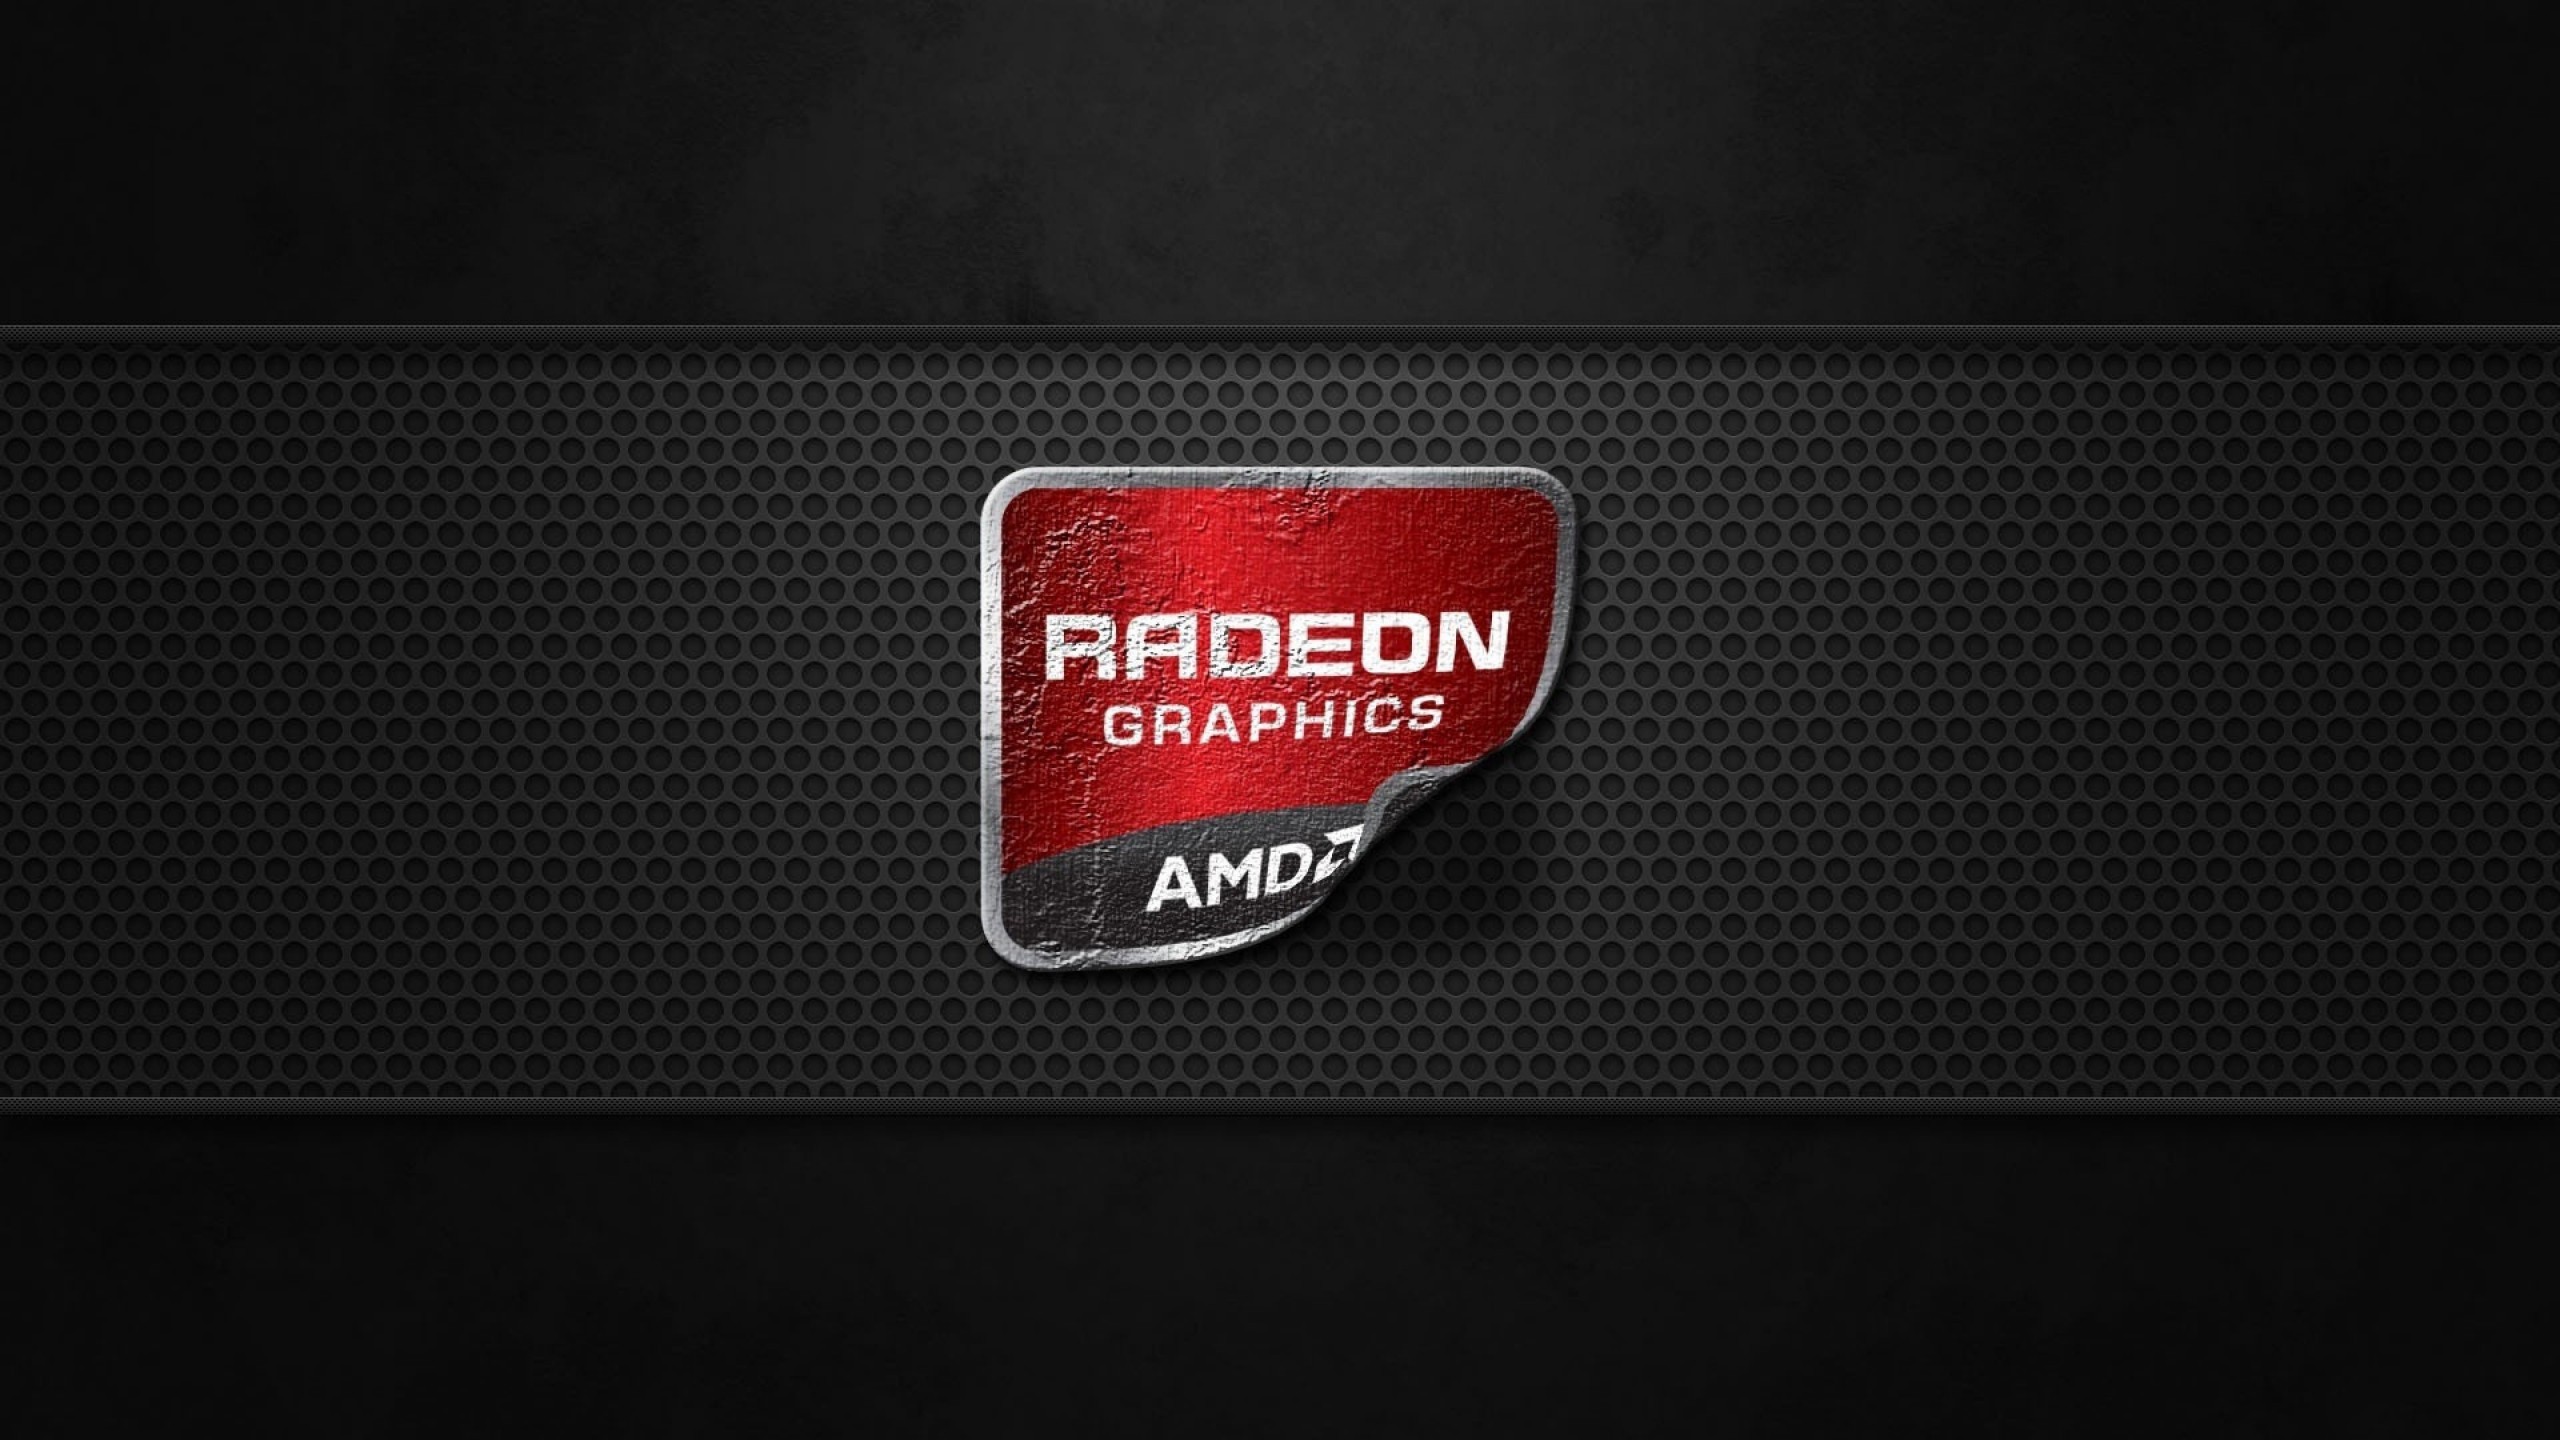 AMD Radeon Graphics Wallpaper for Desktop 2560x1440